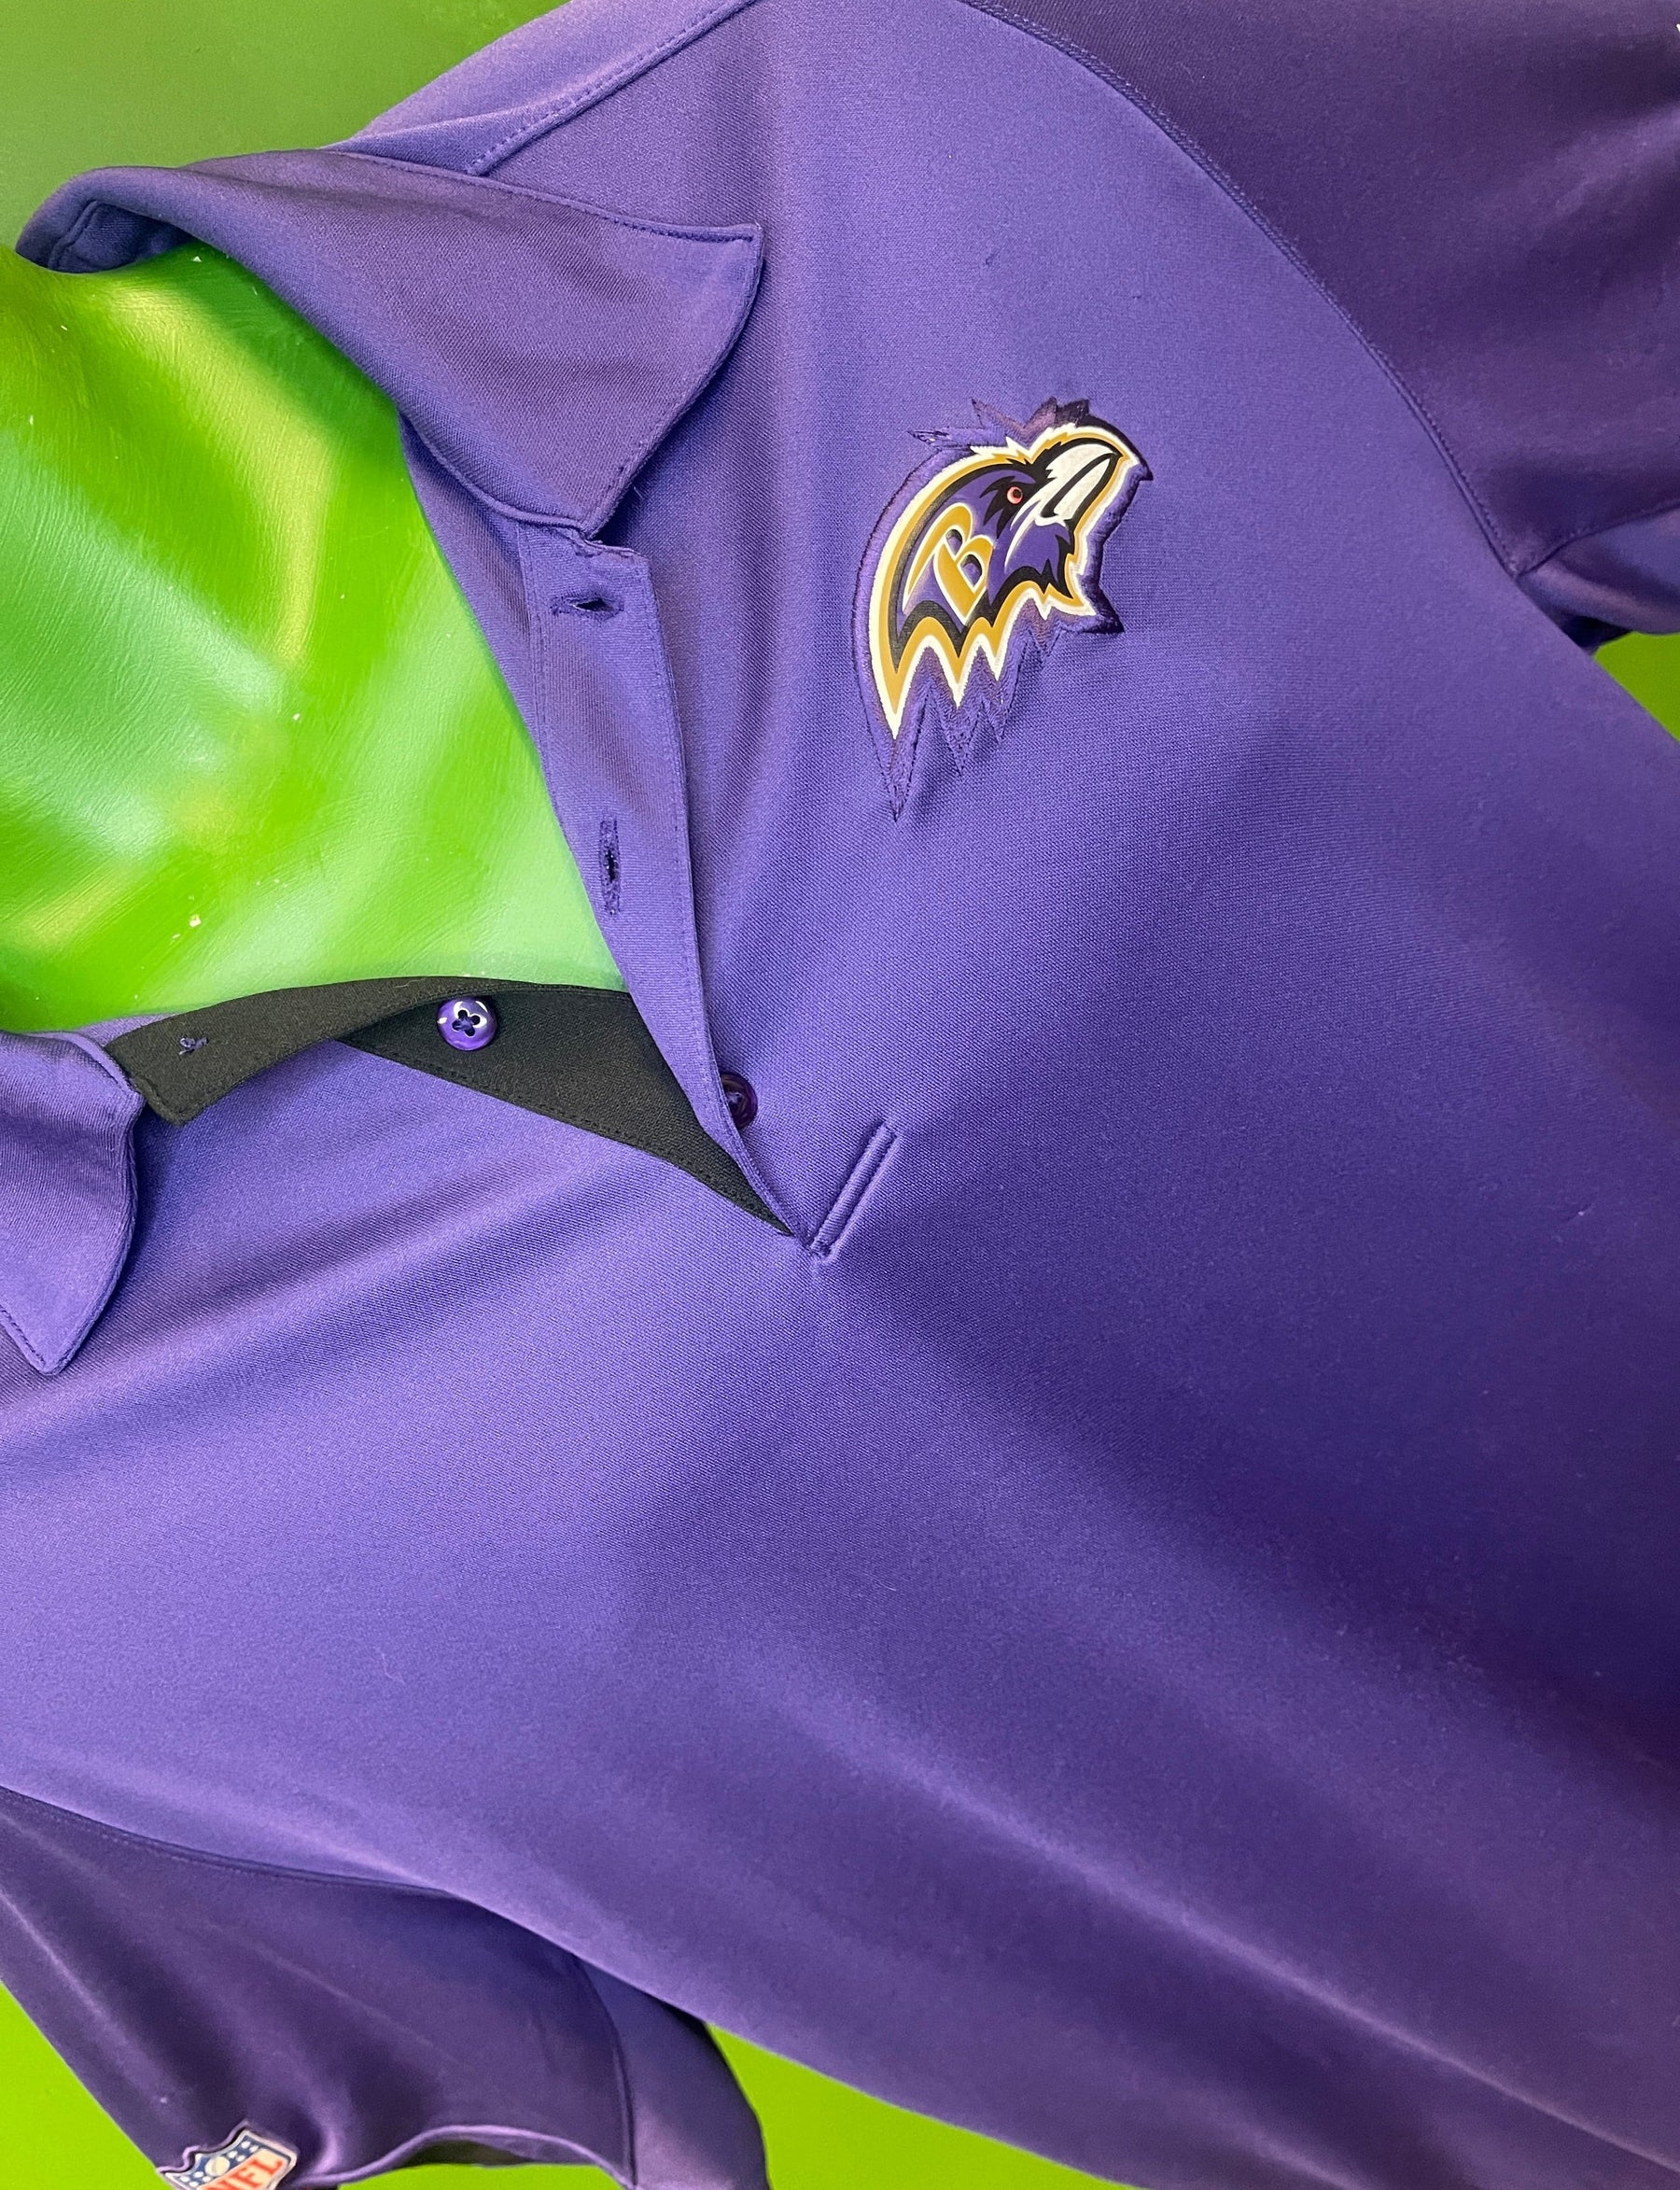 NFL Baltimore Ravens Dri-Fit Purple Polo Shirt Men's Large